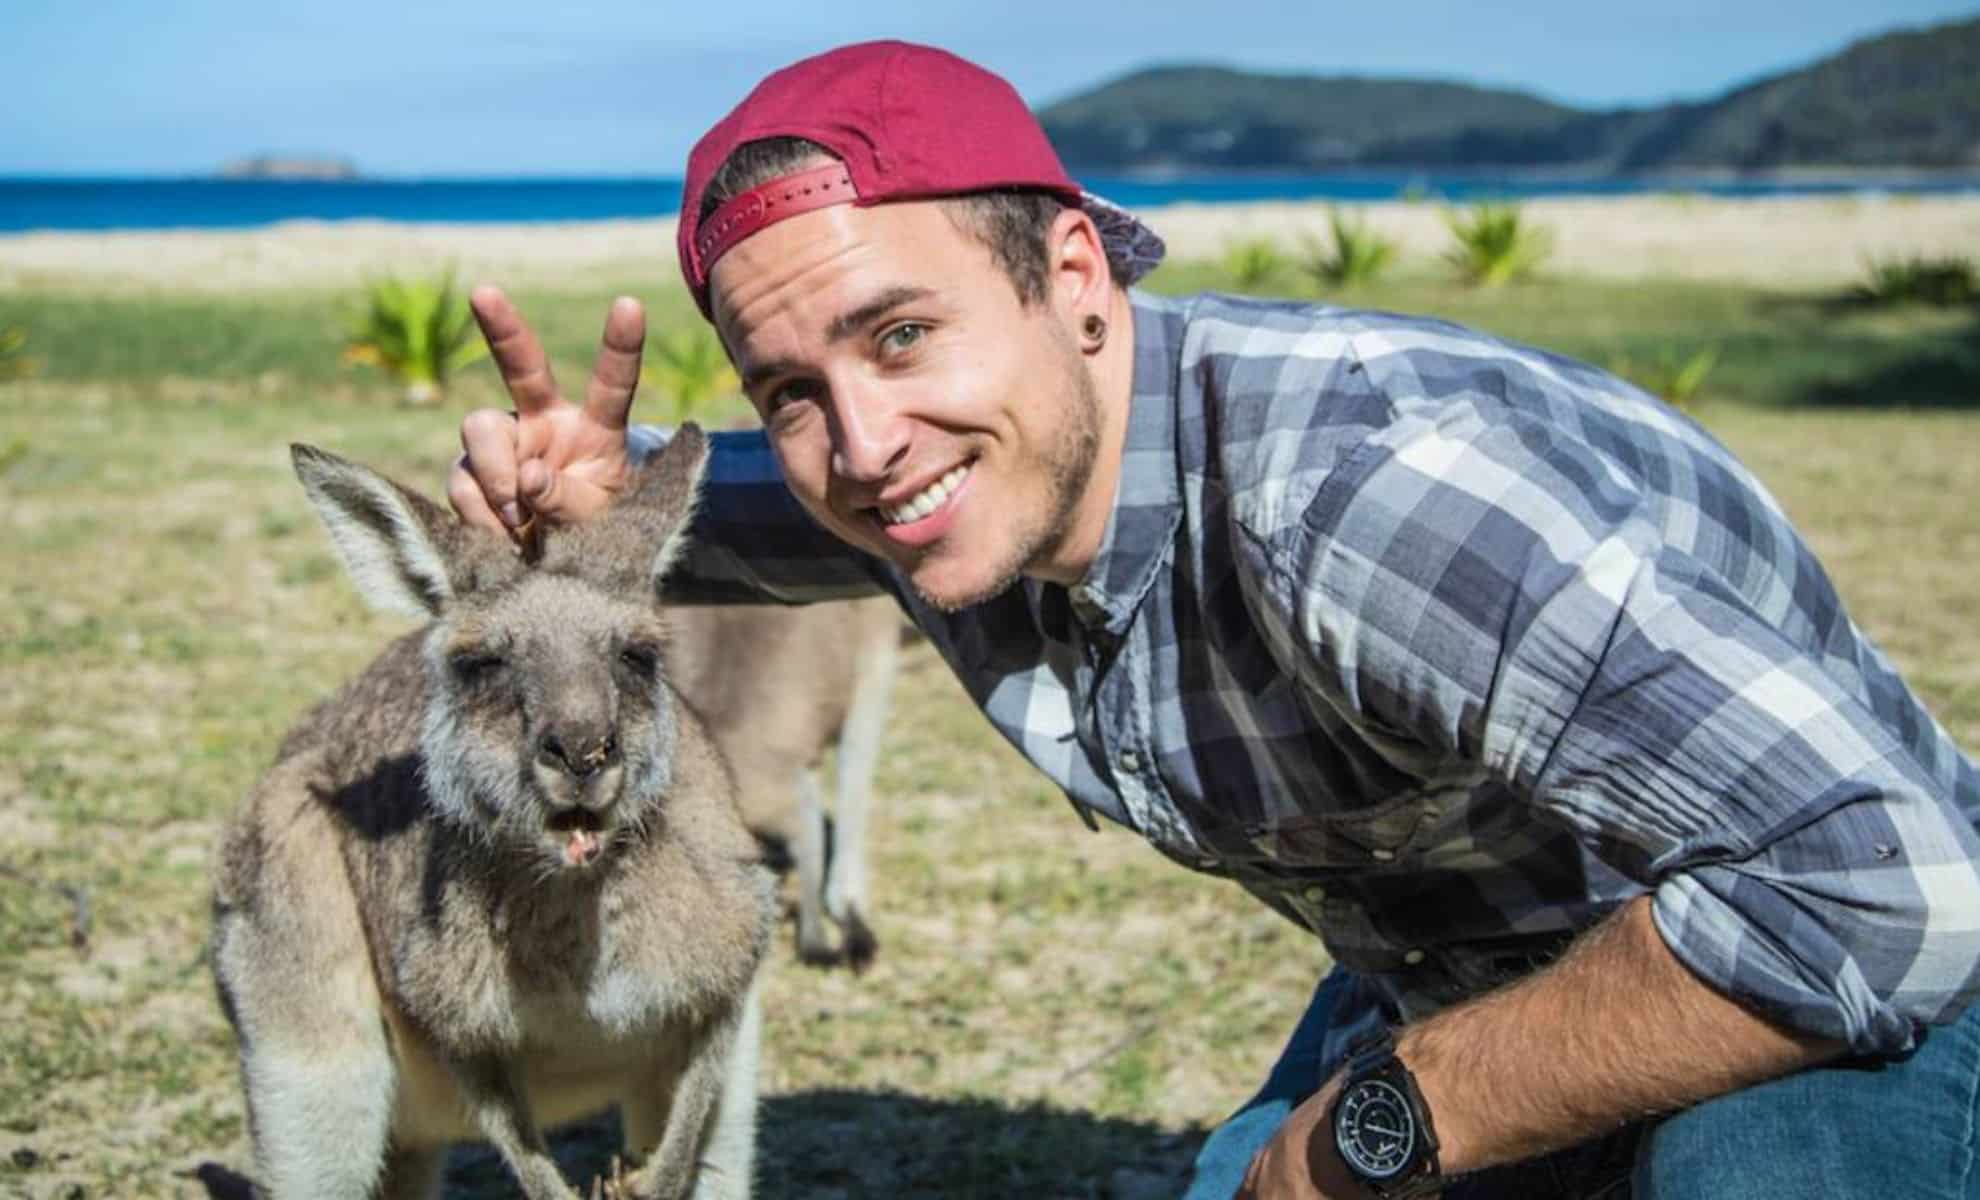 Travail en Australie : Le guide incontournable pour trouver le job en 7 étapes !